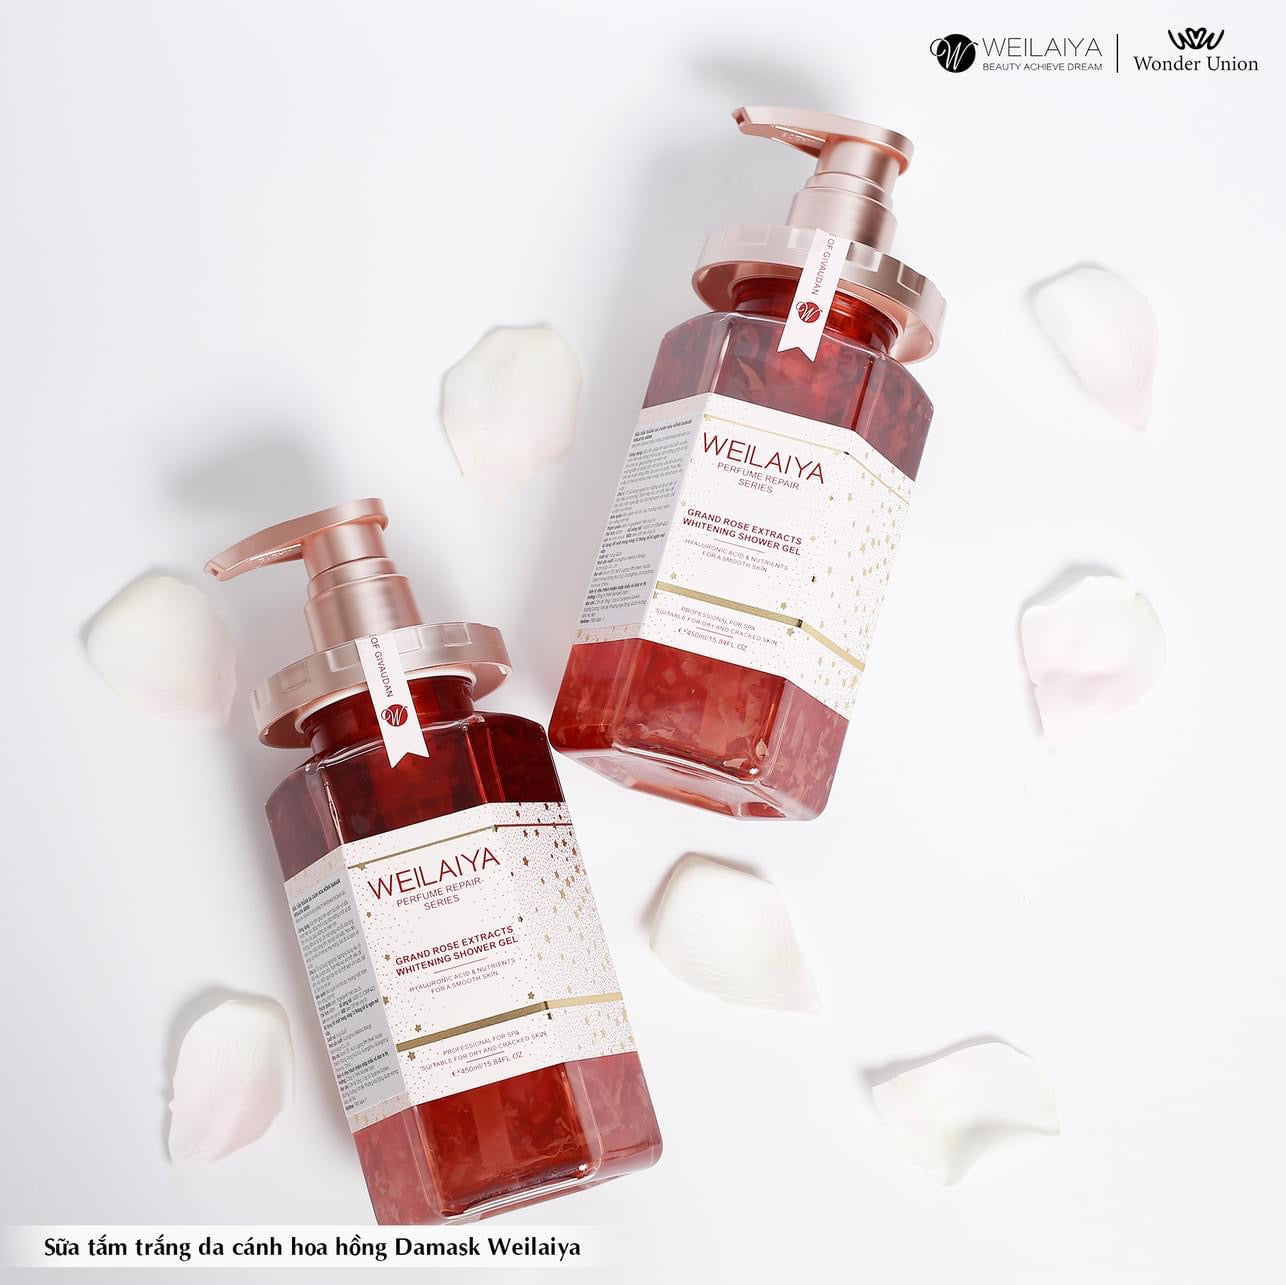 Weilaiya Damask Rose Extract Body Wash – Perfume Body Wash